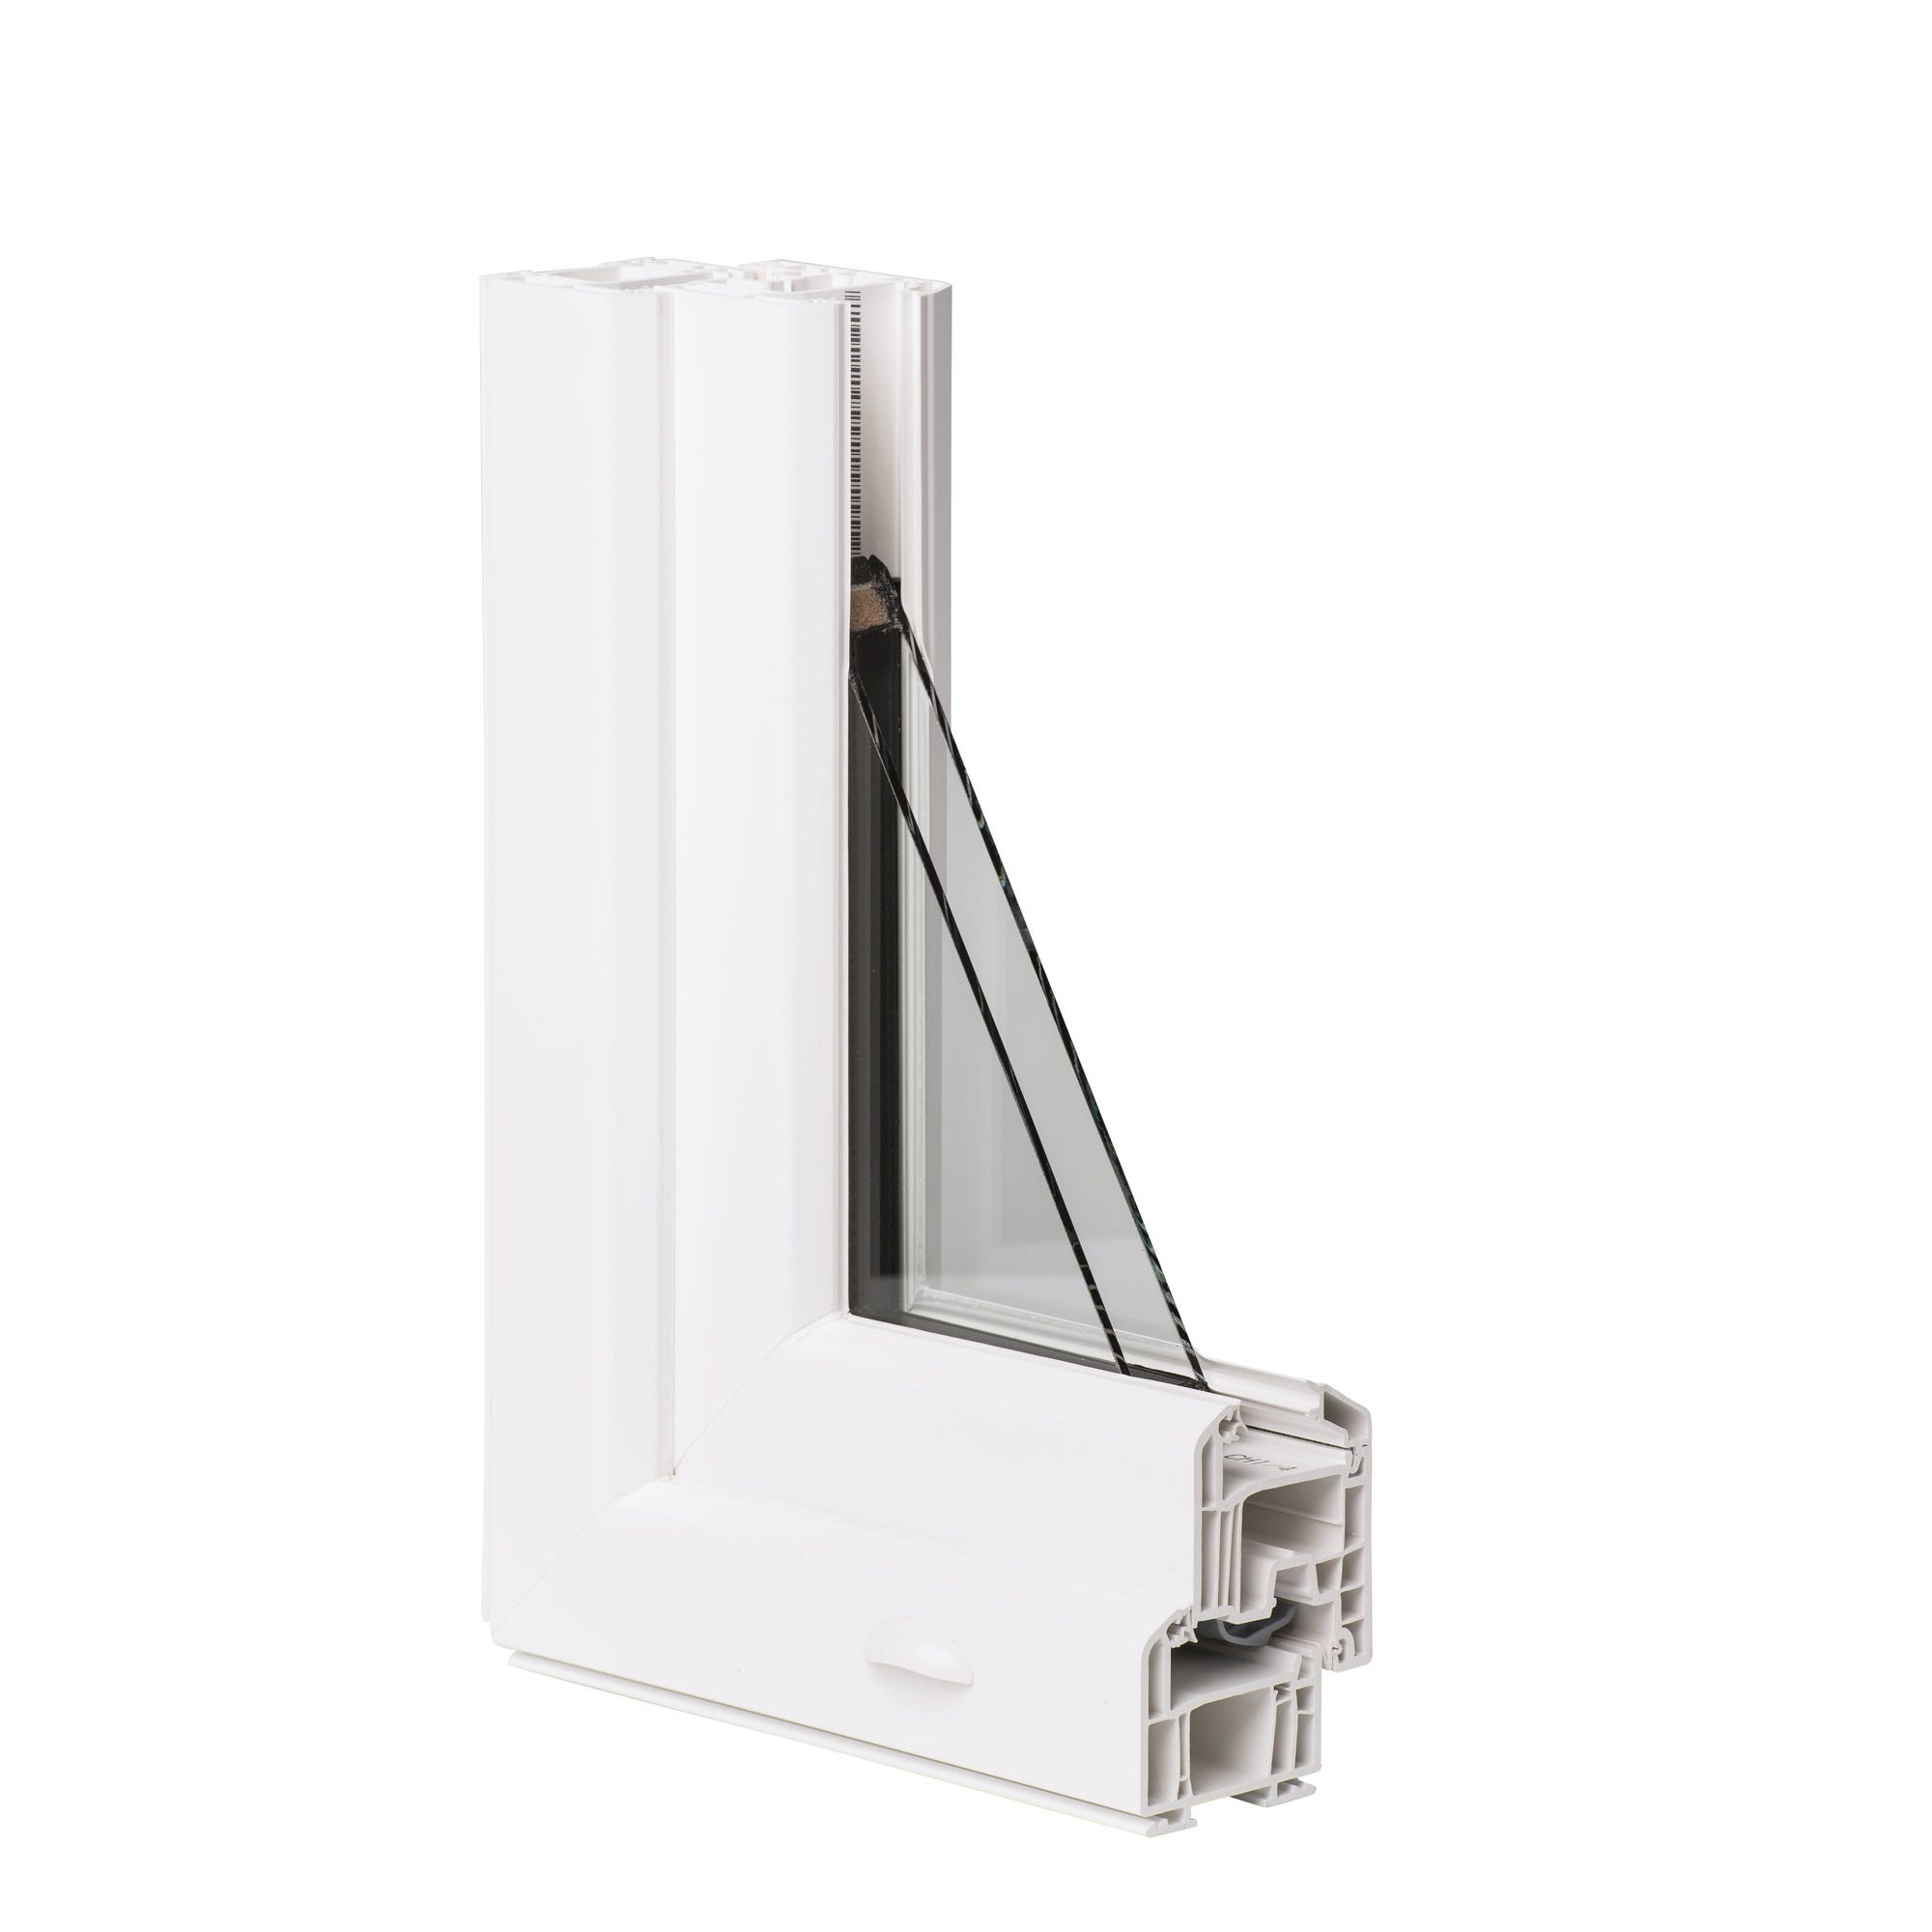 Fenêtre PVC H.75 x l.60 cm oscillo-battant 1 vantail tirant gauche blanc 1